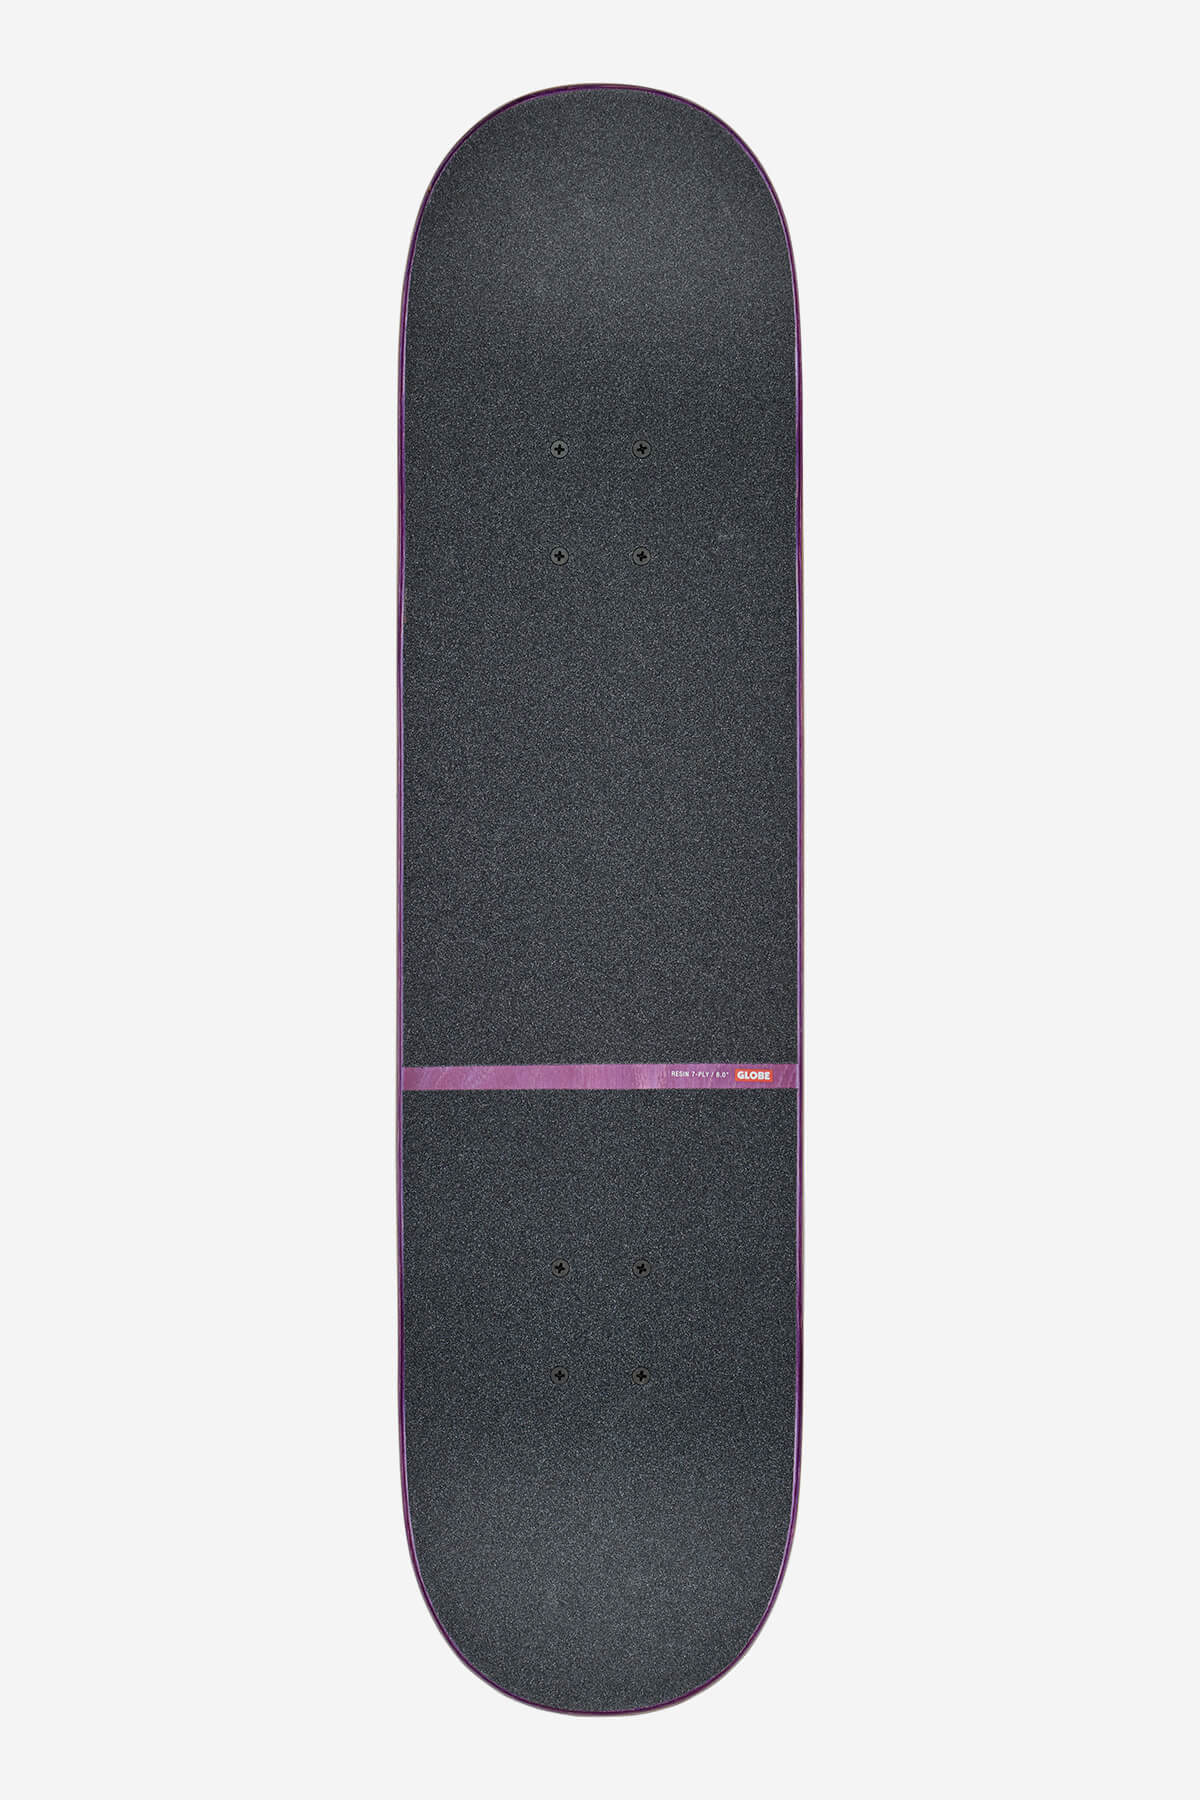 g1 orbit super natural 8.0" complete skateboard